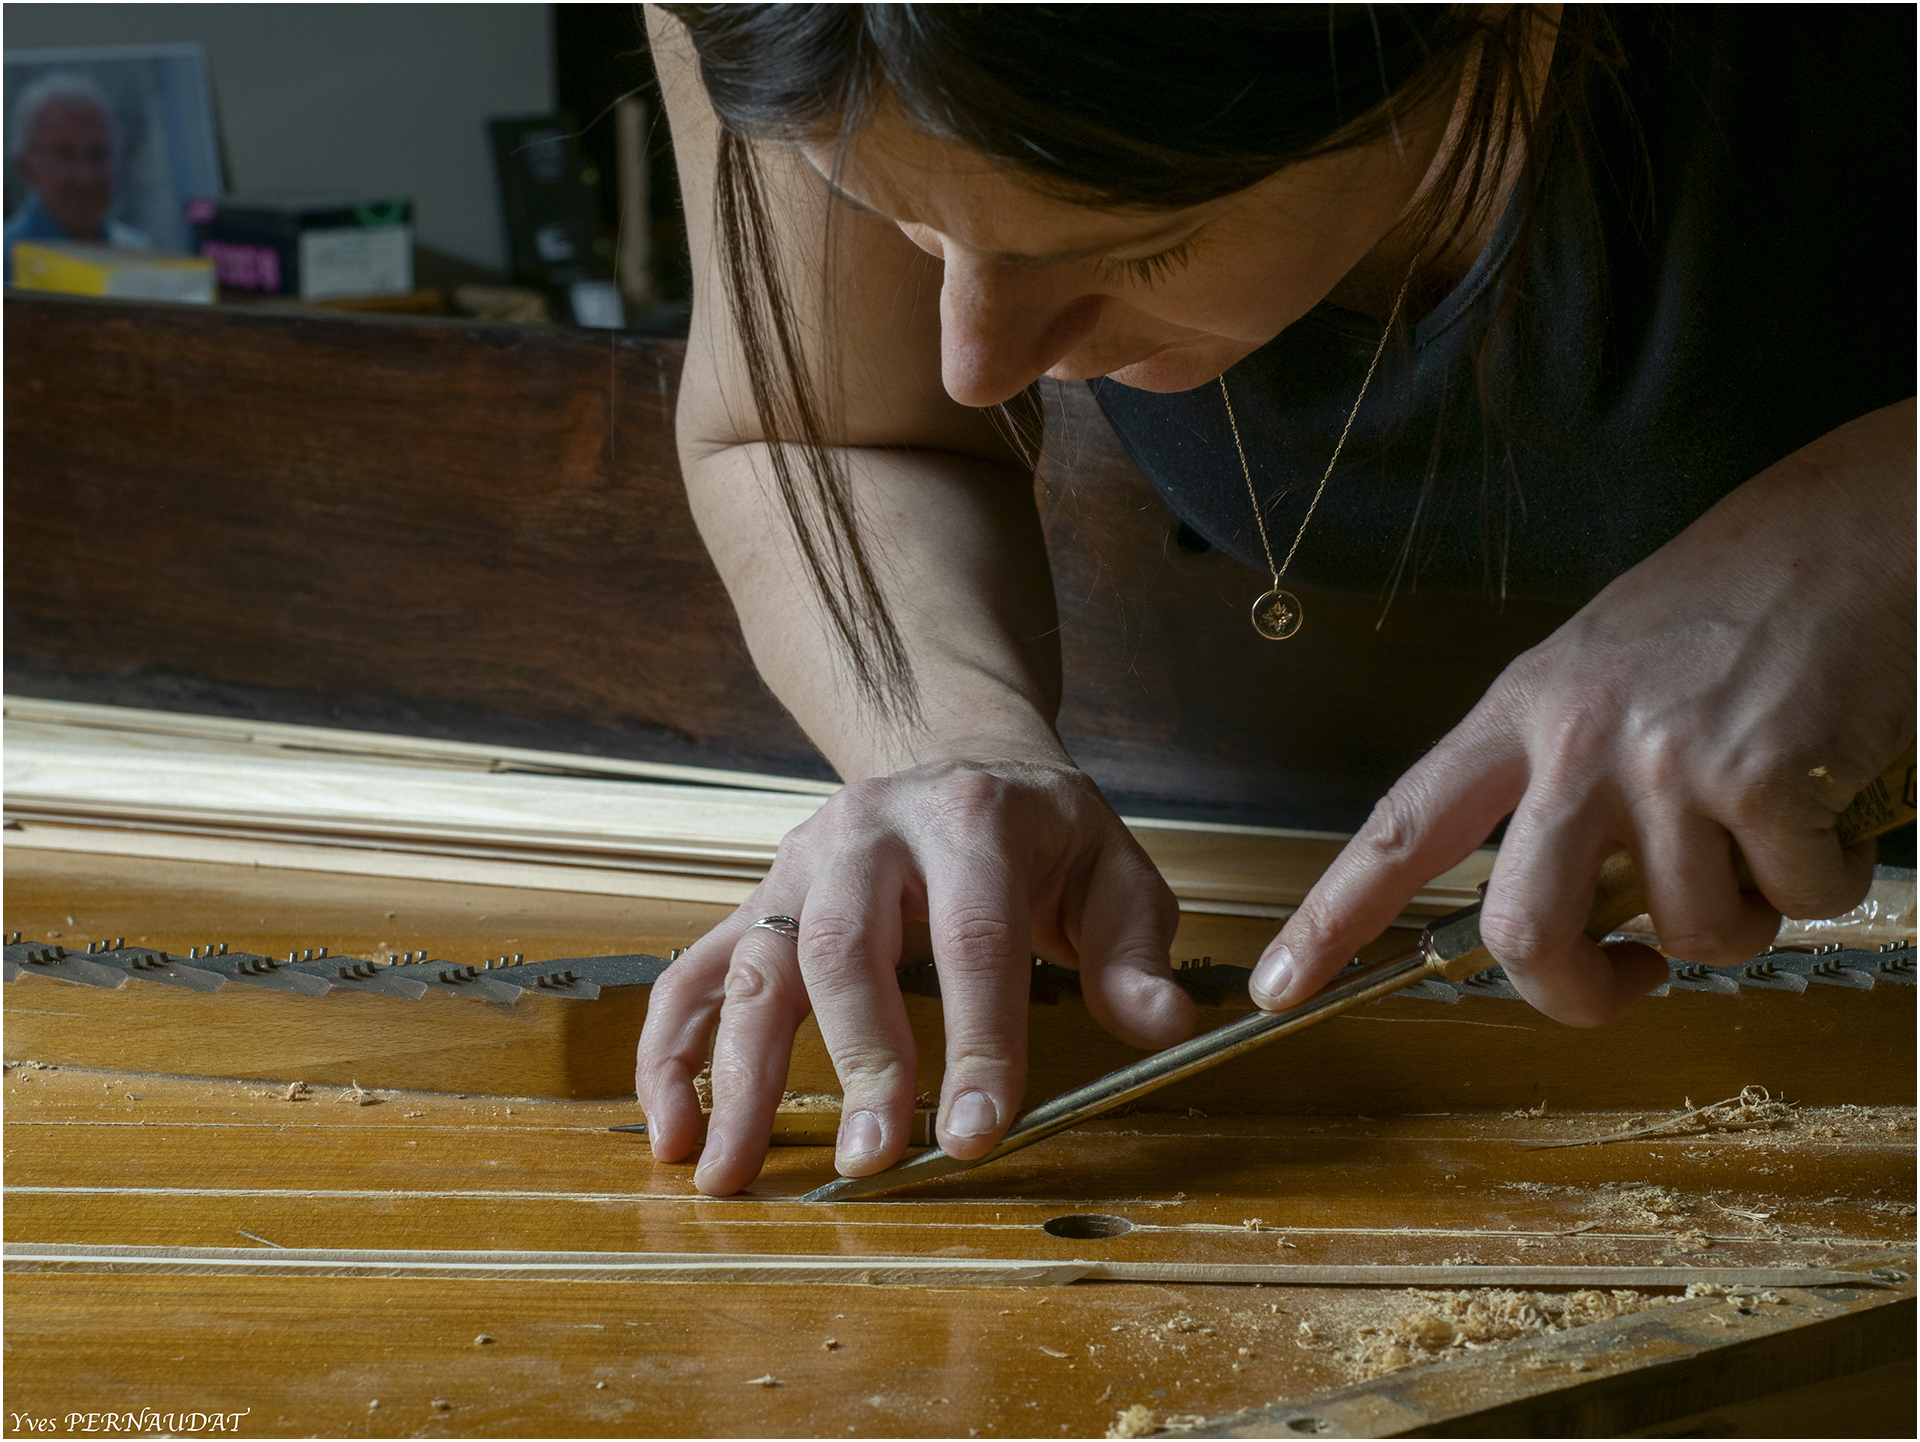 restauration de table d'harmonie de piano demi queue Pleyel 2m04 de 1899 dans atelier de restauration de pianos de Marion Lainé en Savoie